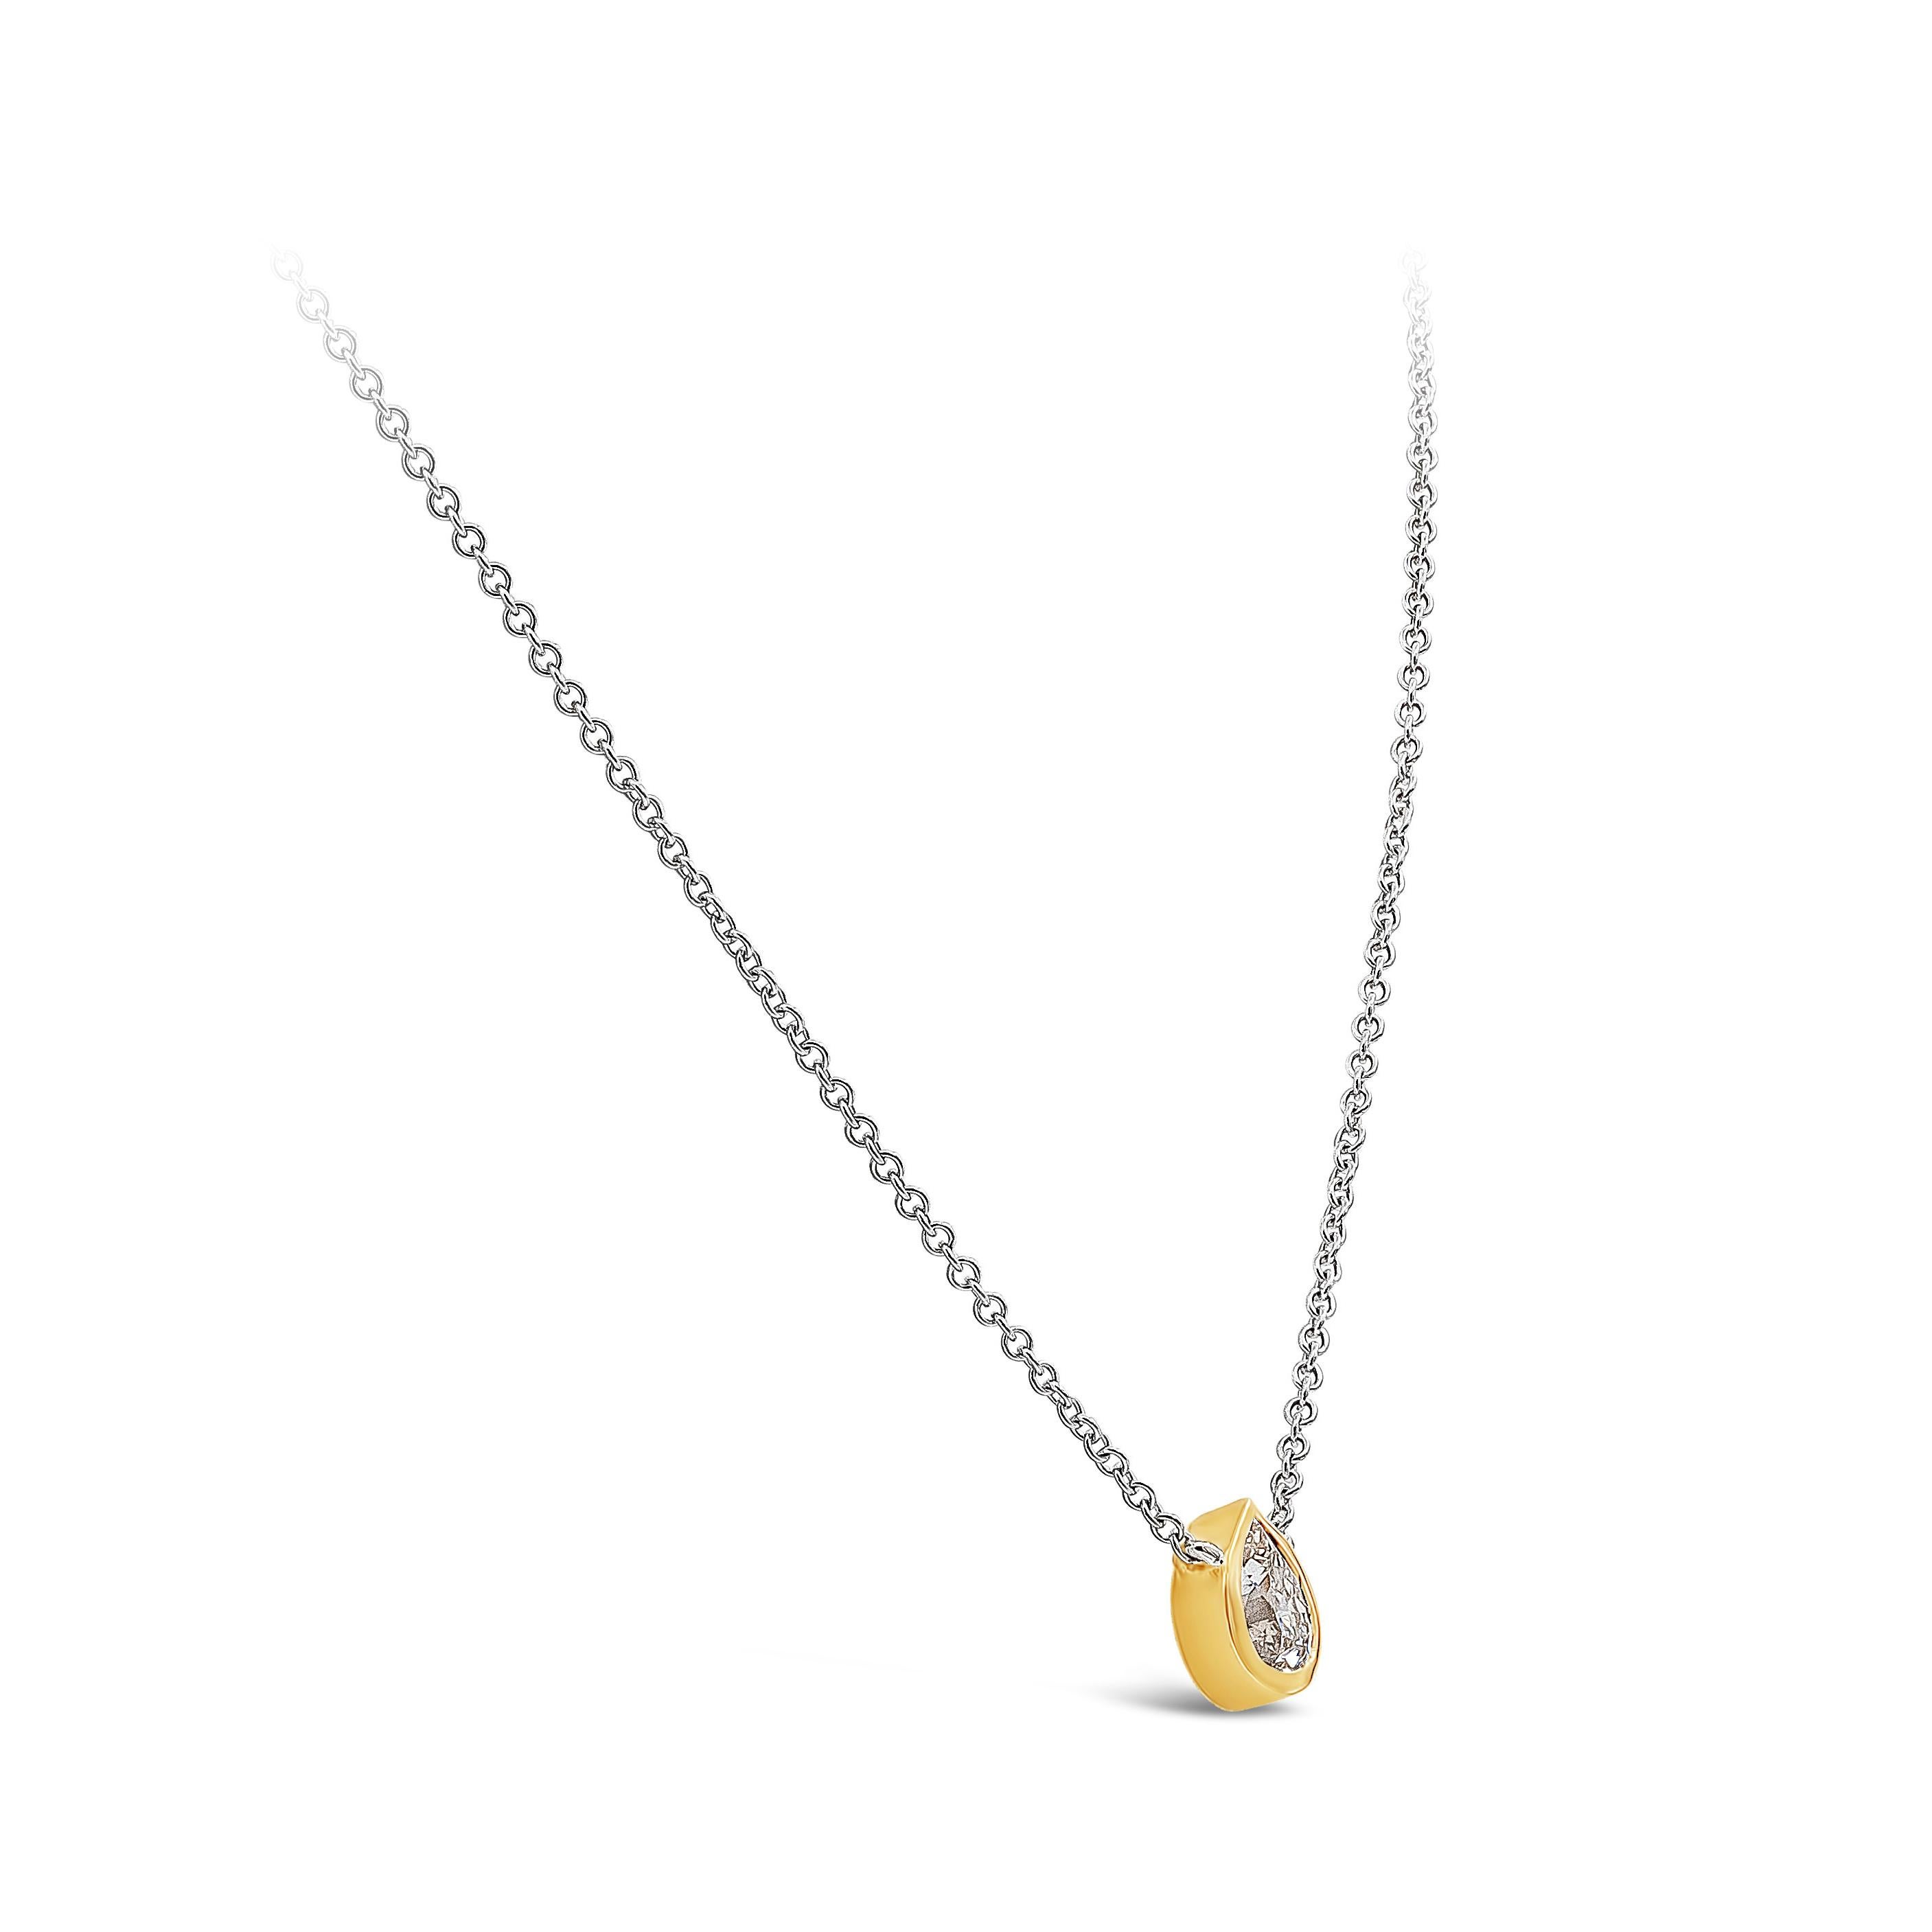 Ce collier simple met en valeur un diamant poire de 0,92 carat certifié par le GIA, de couleur L et de pureté SI2. Lunette en or jaune 14K, suspendue à une chaîne en or blanc 14K. Longueur : 16 pouces. 

Style disponible dans différentes gammes de